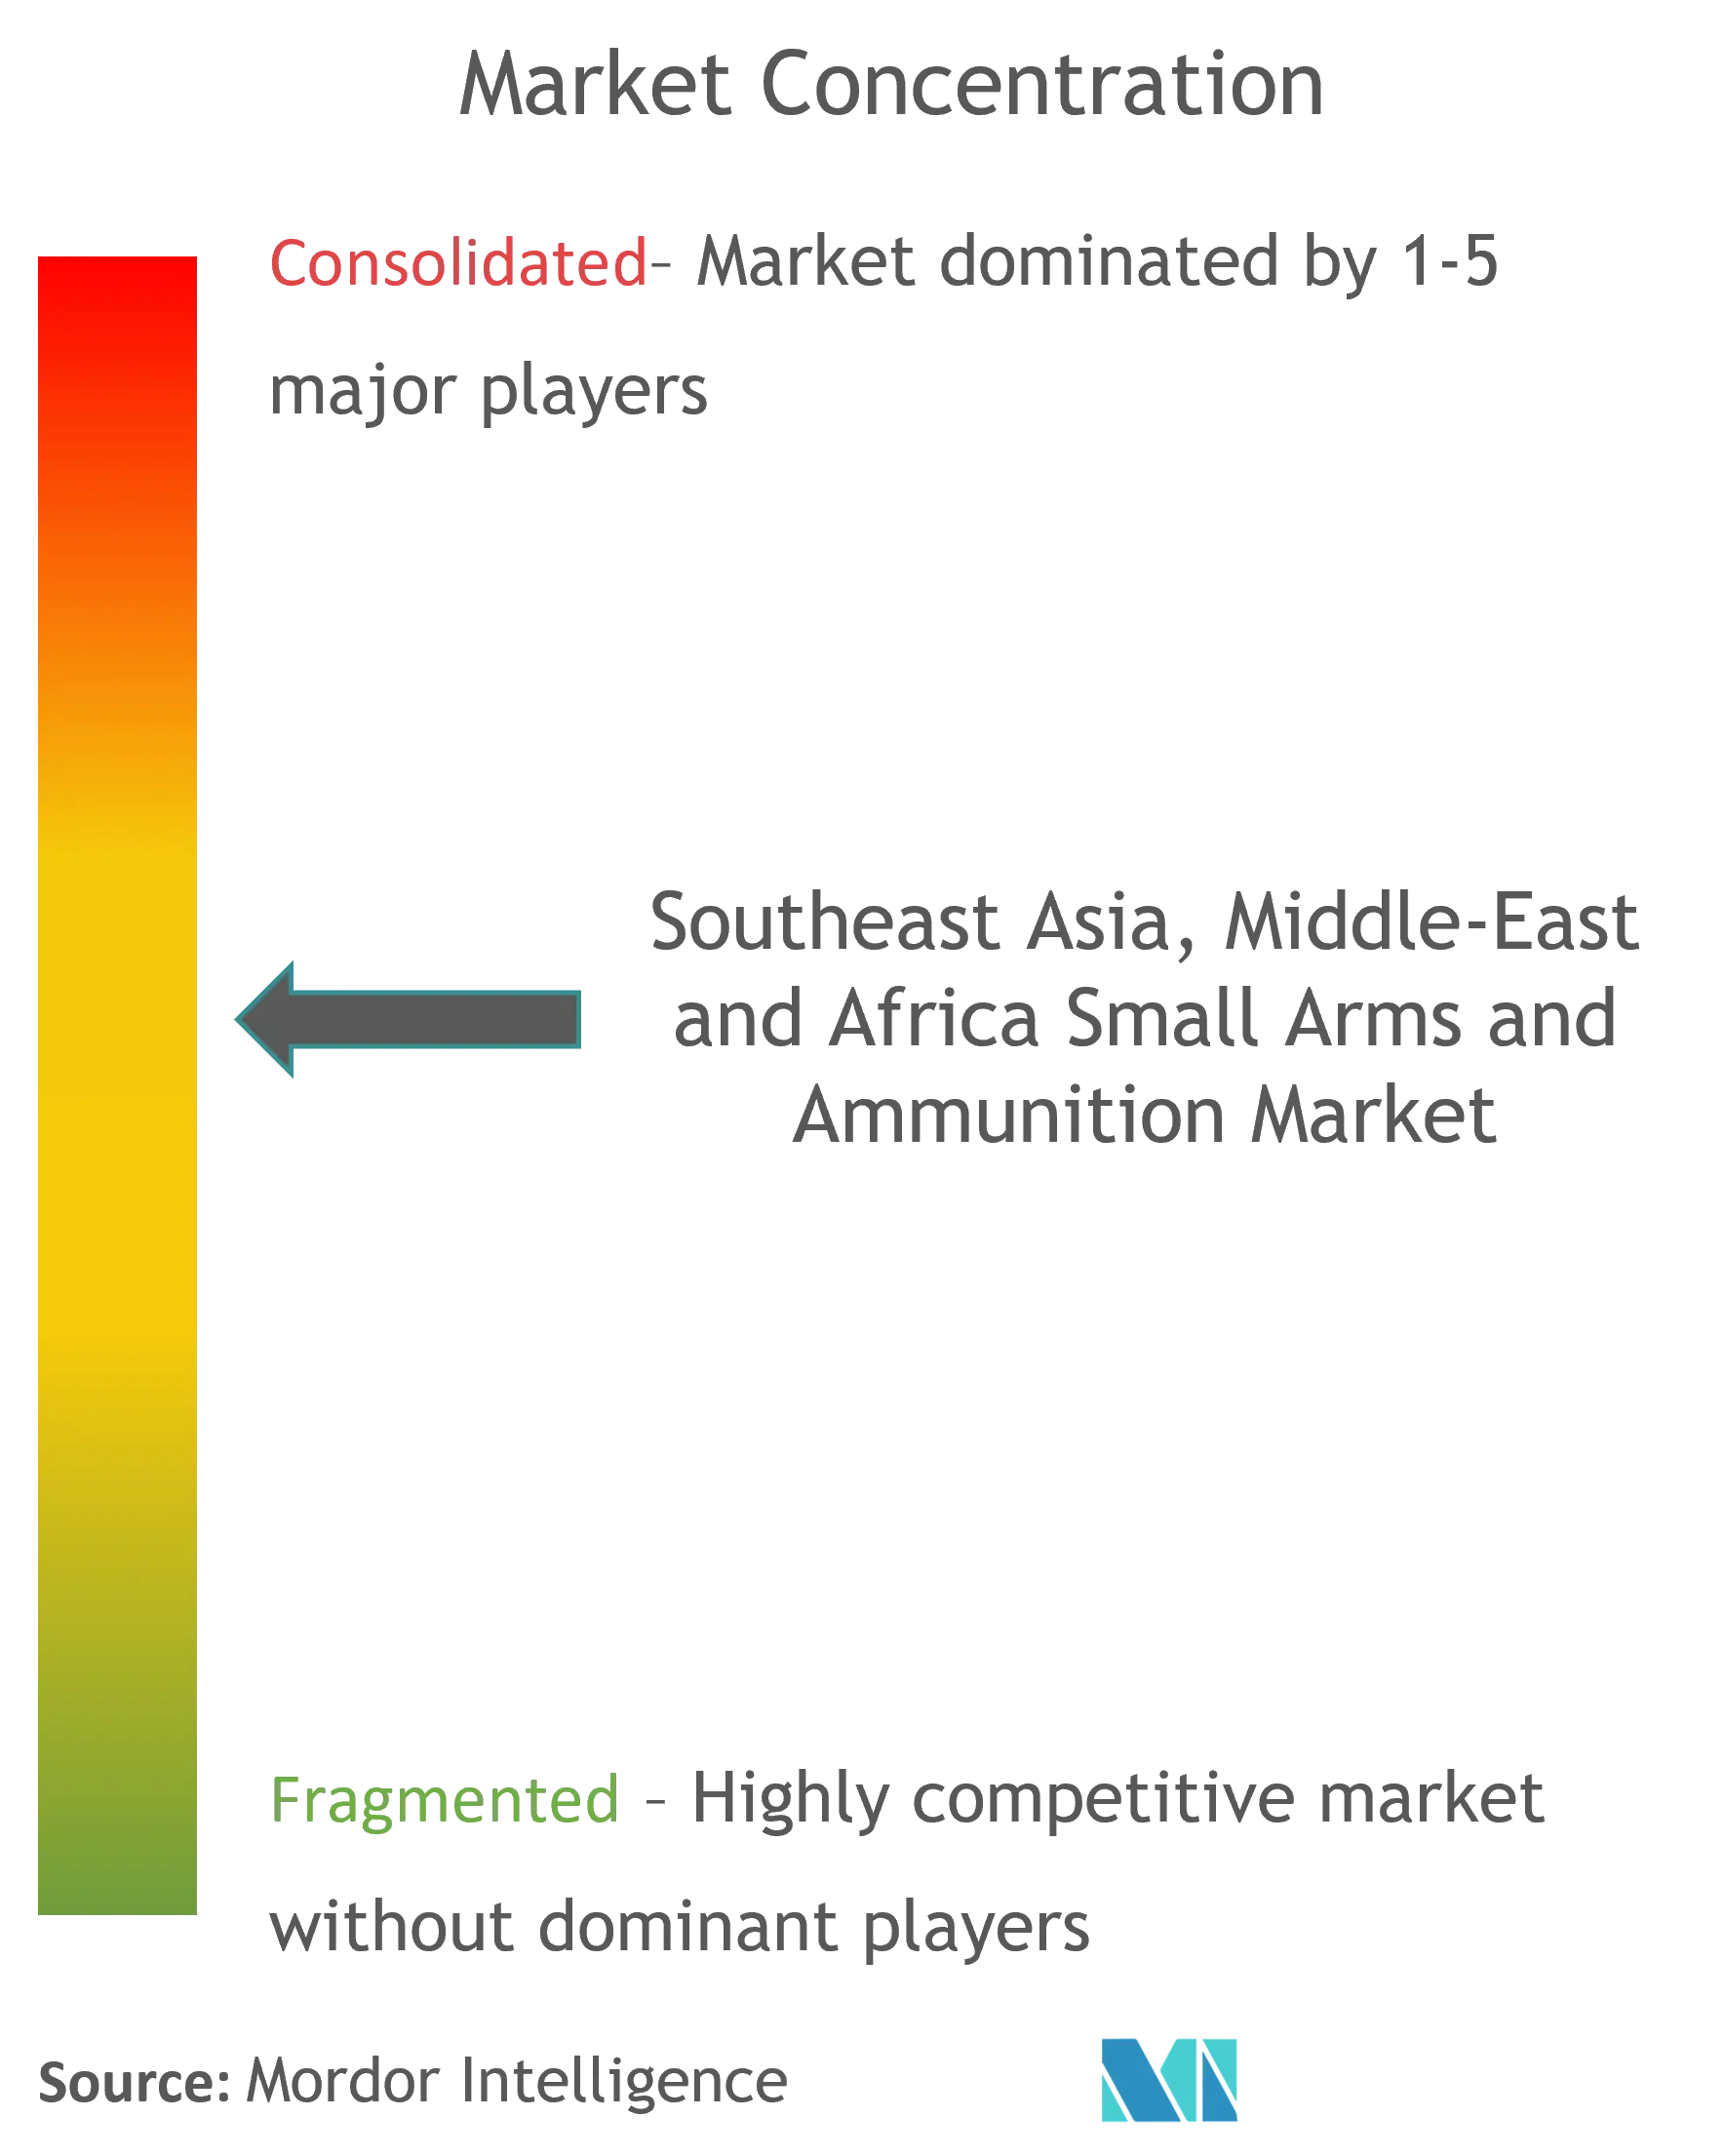 تركيز سوق الأسلحة الصغيرة والذخيرة في جنوب شرق آسيا والشرق الأوسط وأفريقيا